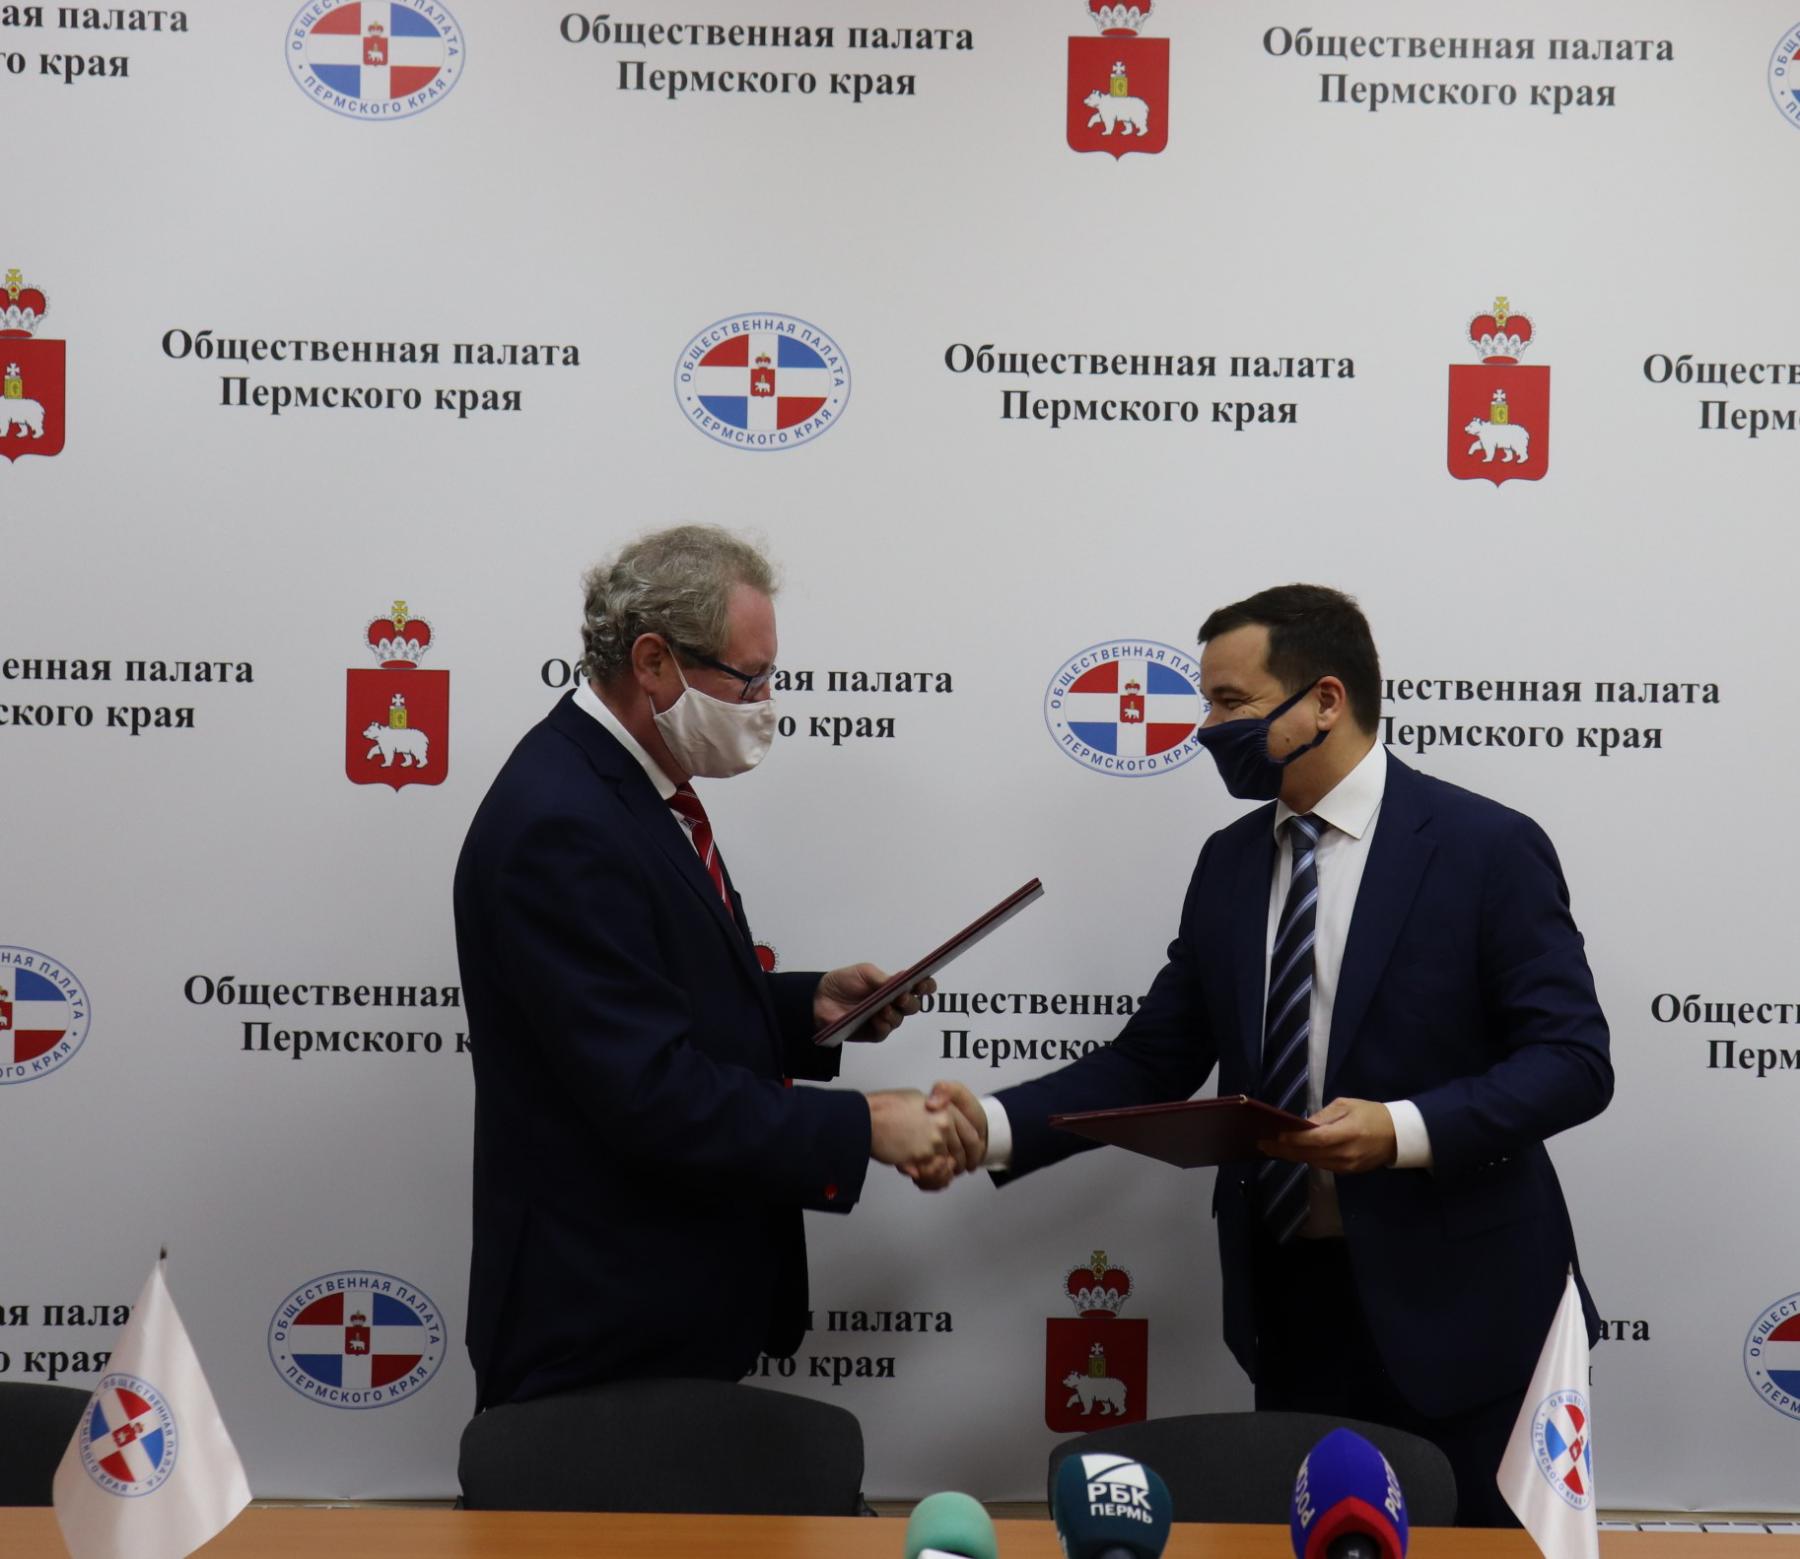 Уполномоченный по правам человека в Прикамье Павел Миков подписал Соглашение о сотрудничестве с Избирательной комиссией Пермского края